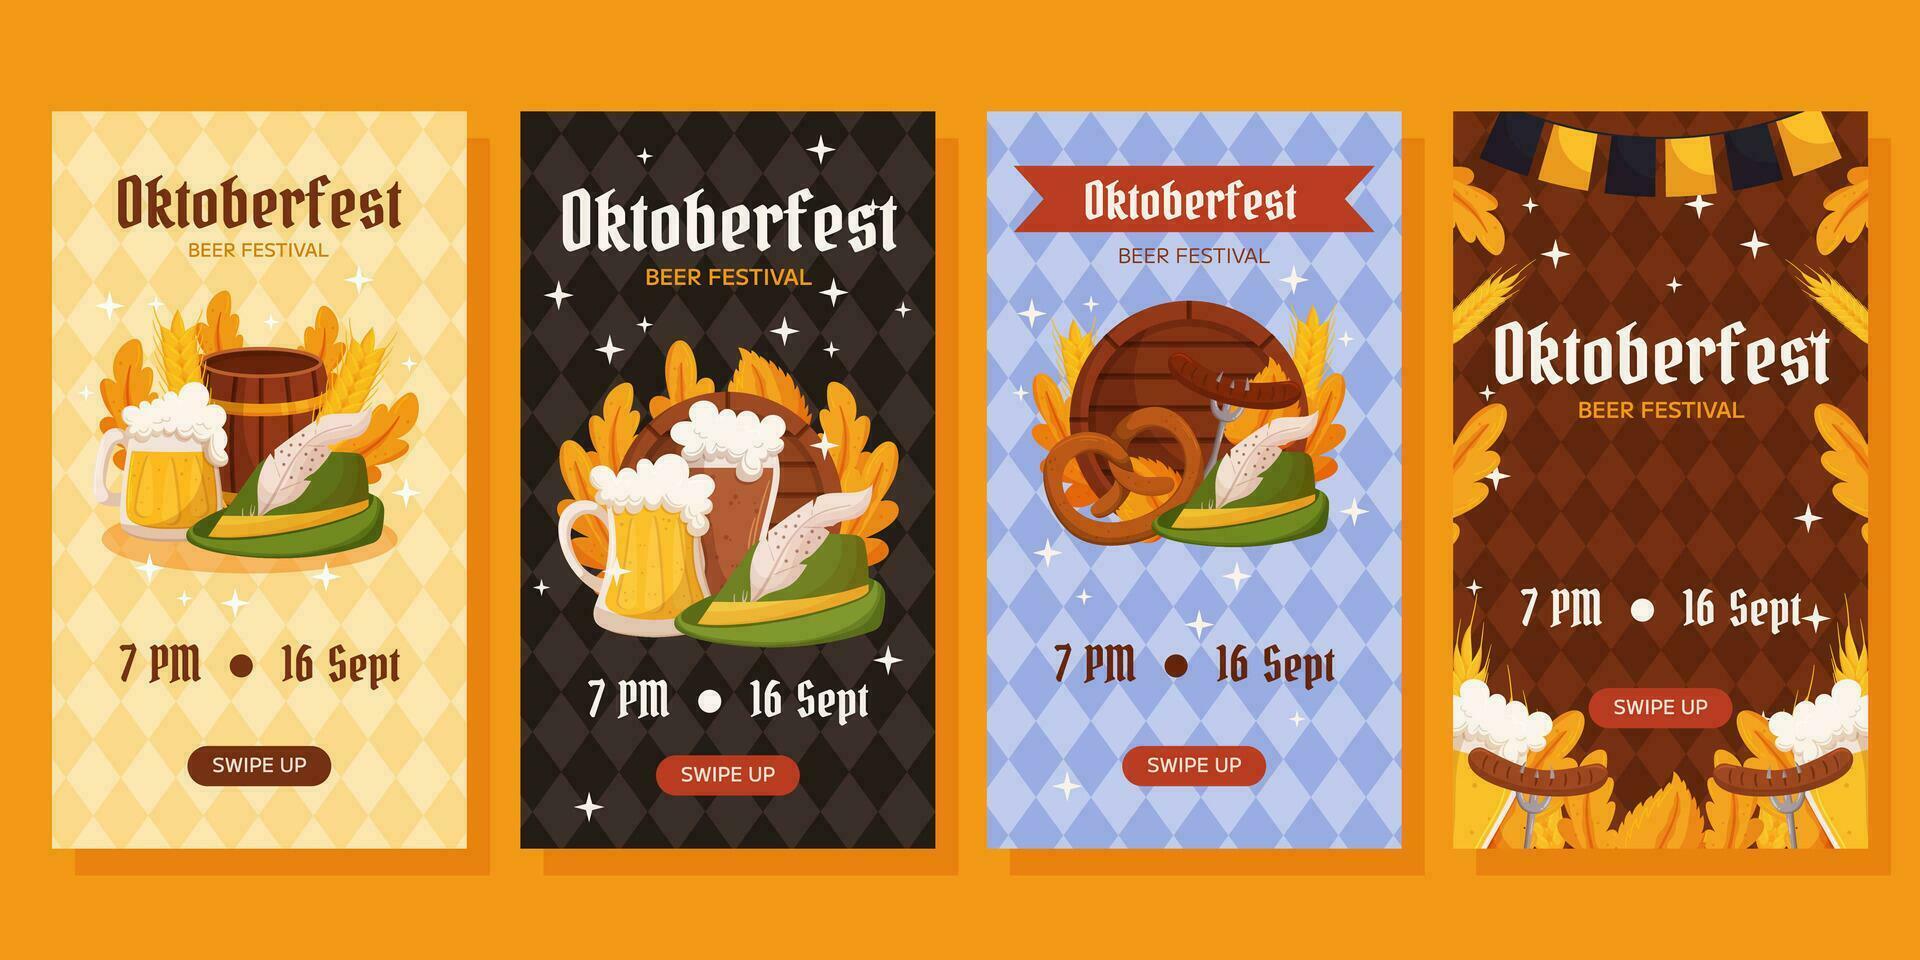 Oktoberfest Deutsche Bier Festival Vertikale Sozial Medien Geschichten Sammlung. Designs mit Glas von Bier, Weizen und Blätter, Tiroler Hut und hölzern Fass. Rhombus Muster auf zurück vektor